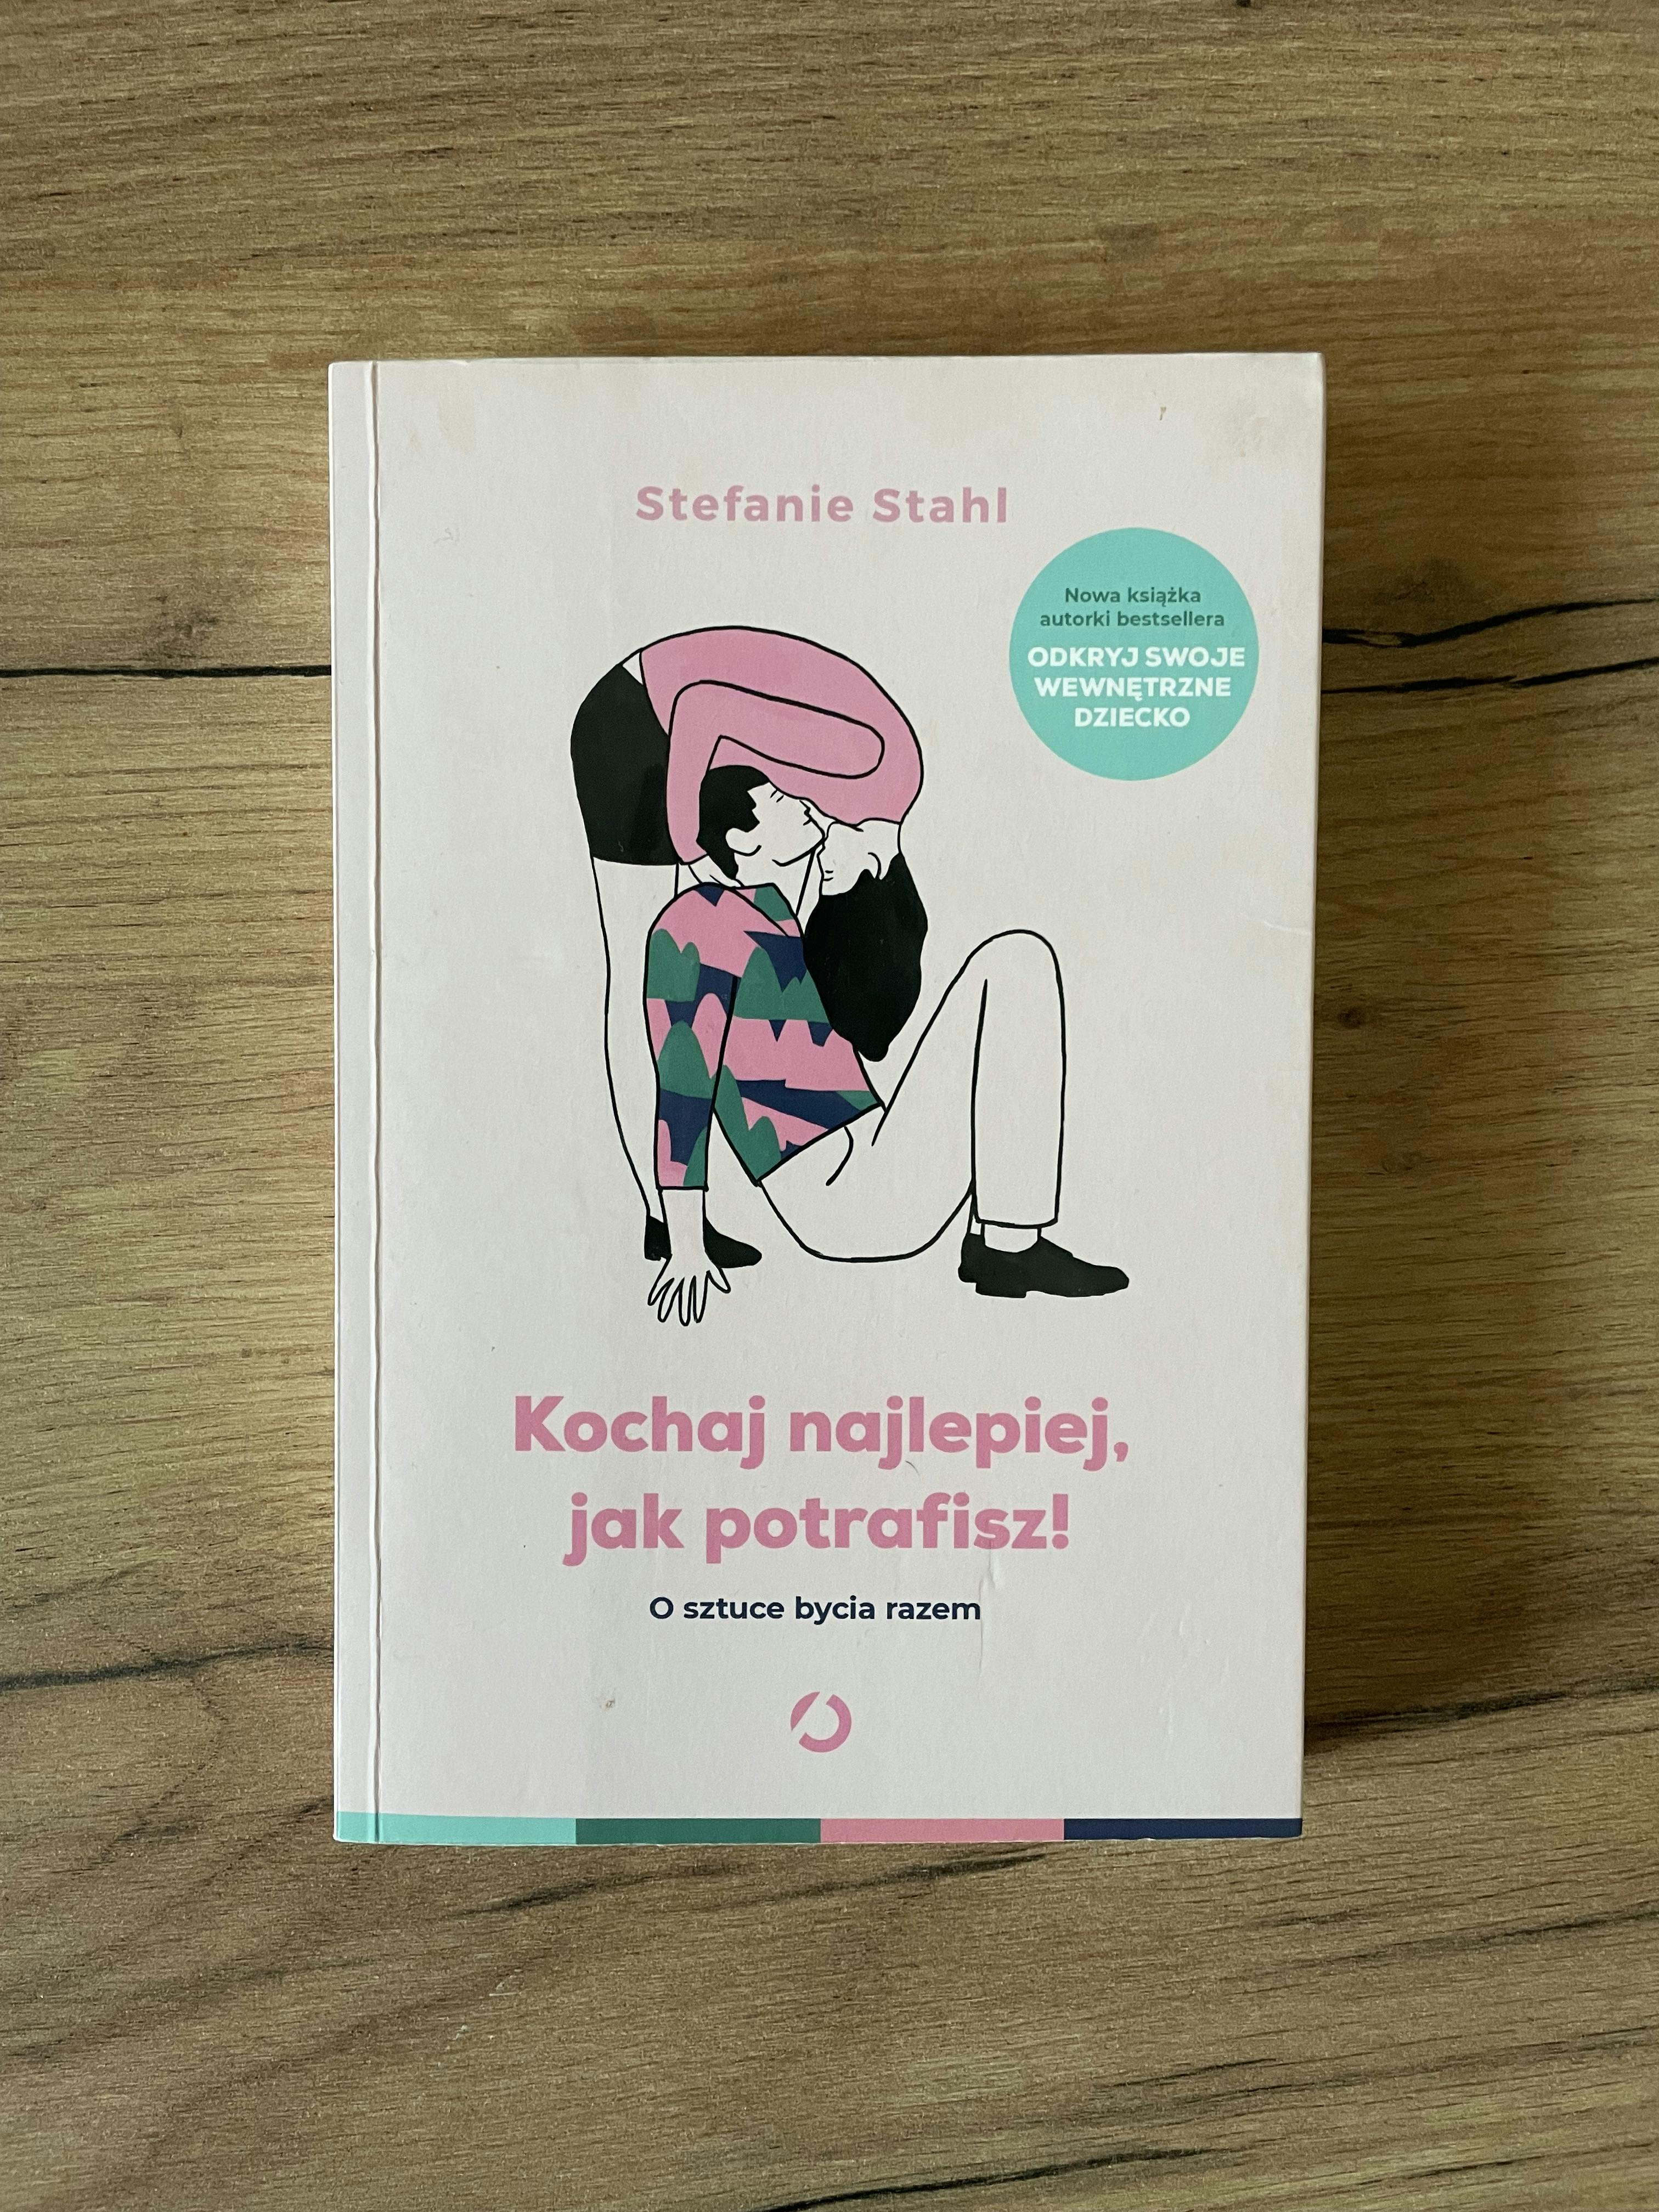 Primary picture of Książka "Kochaj najlepiej, jak potrafisz!". Autor: Stefanie Stahl.